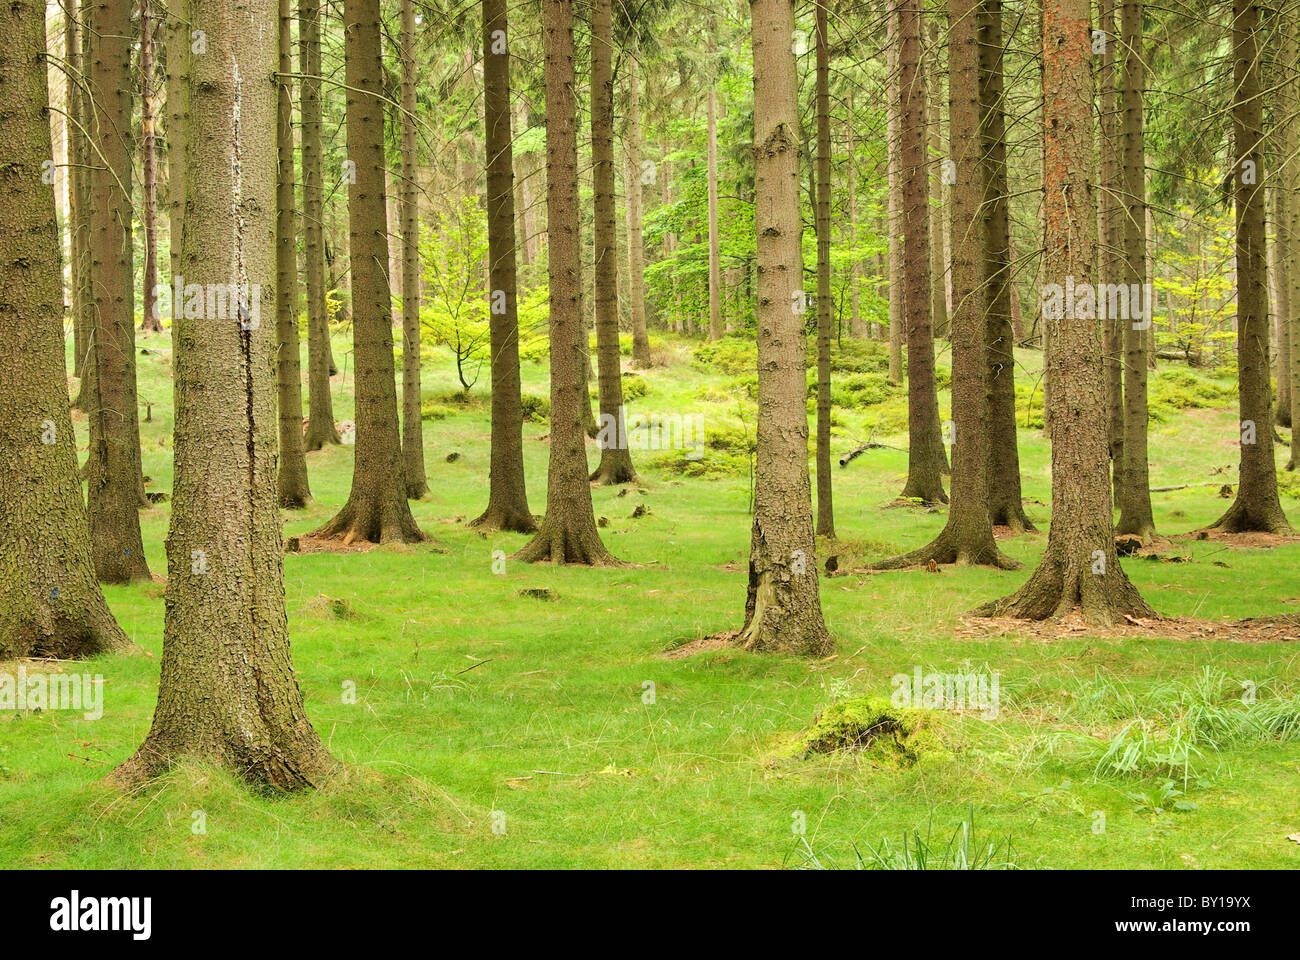 Fichtenwald - foreste di abete rosso 05 Foto Stock